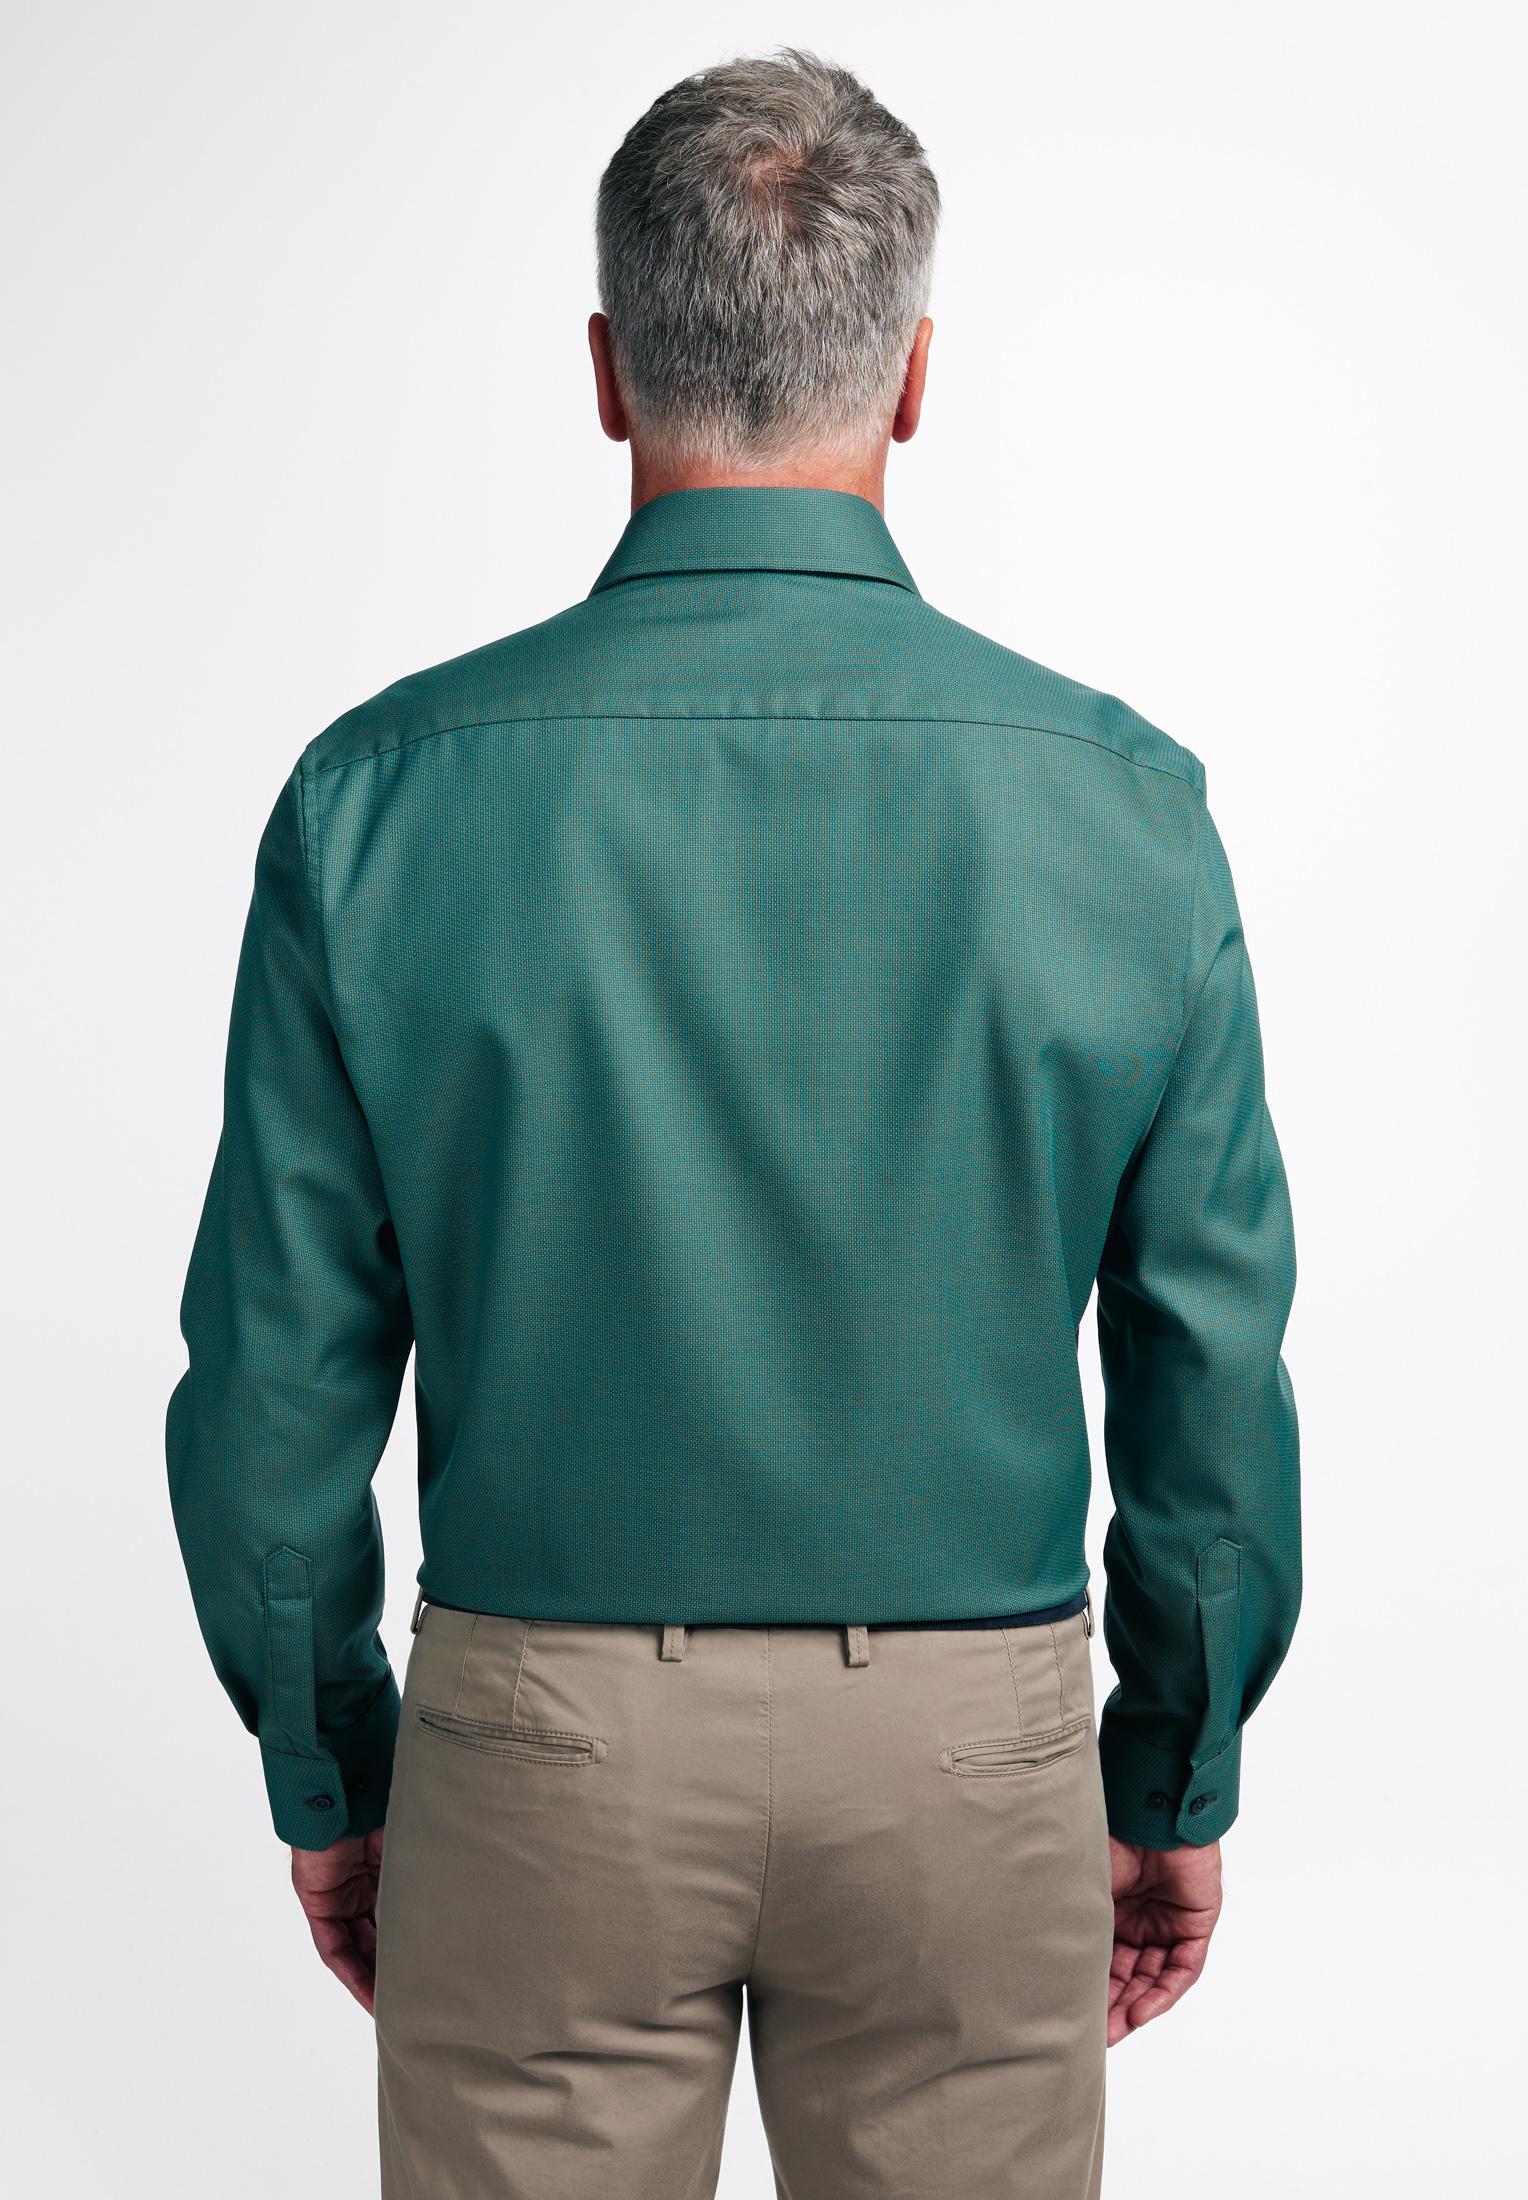 Мужская рубашка ETERNA, зеленая, цвет зеленый, размер 48 - фото 3